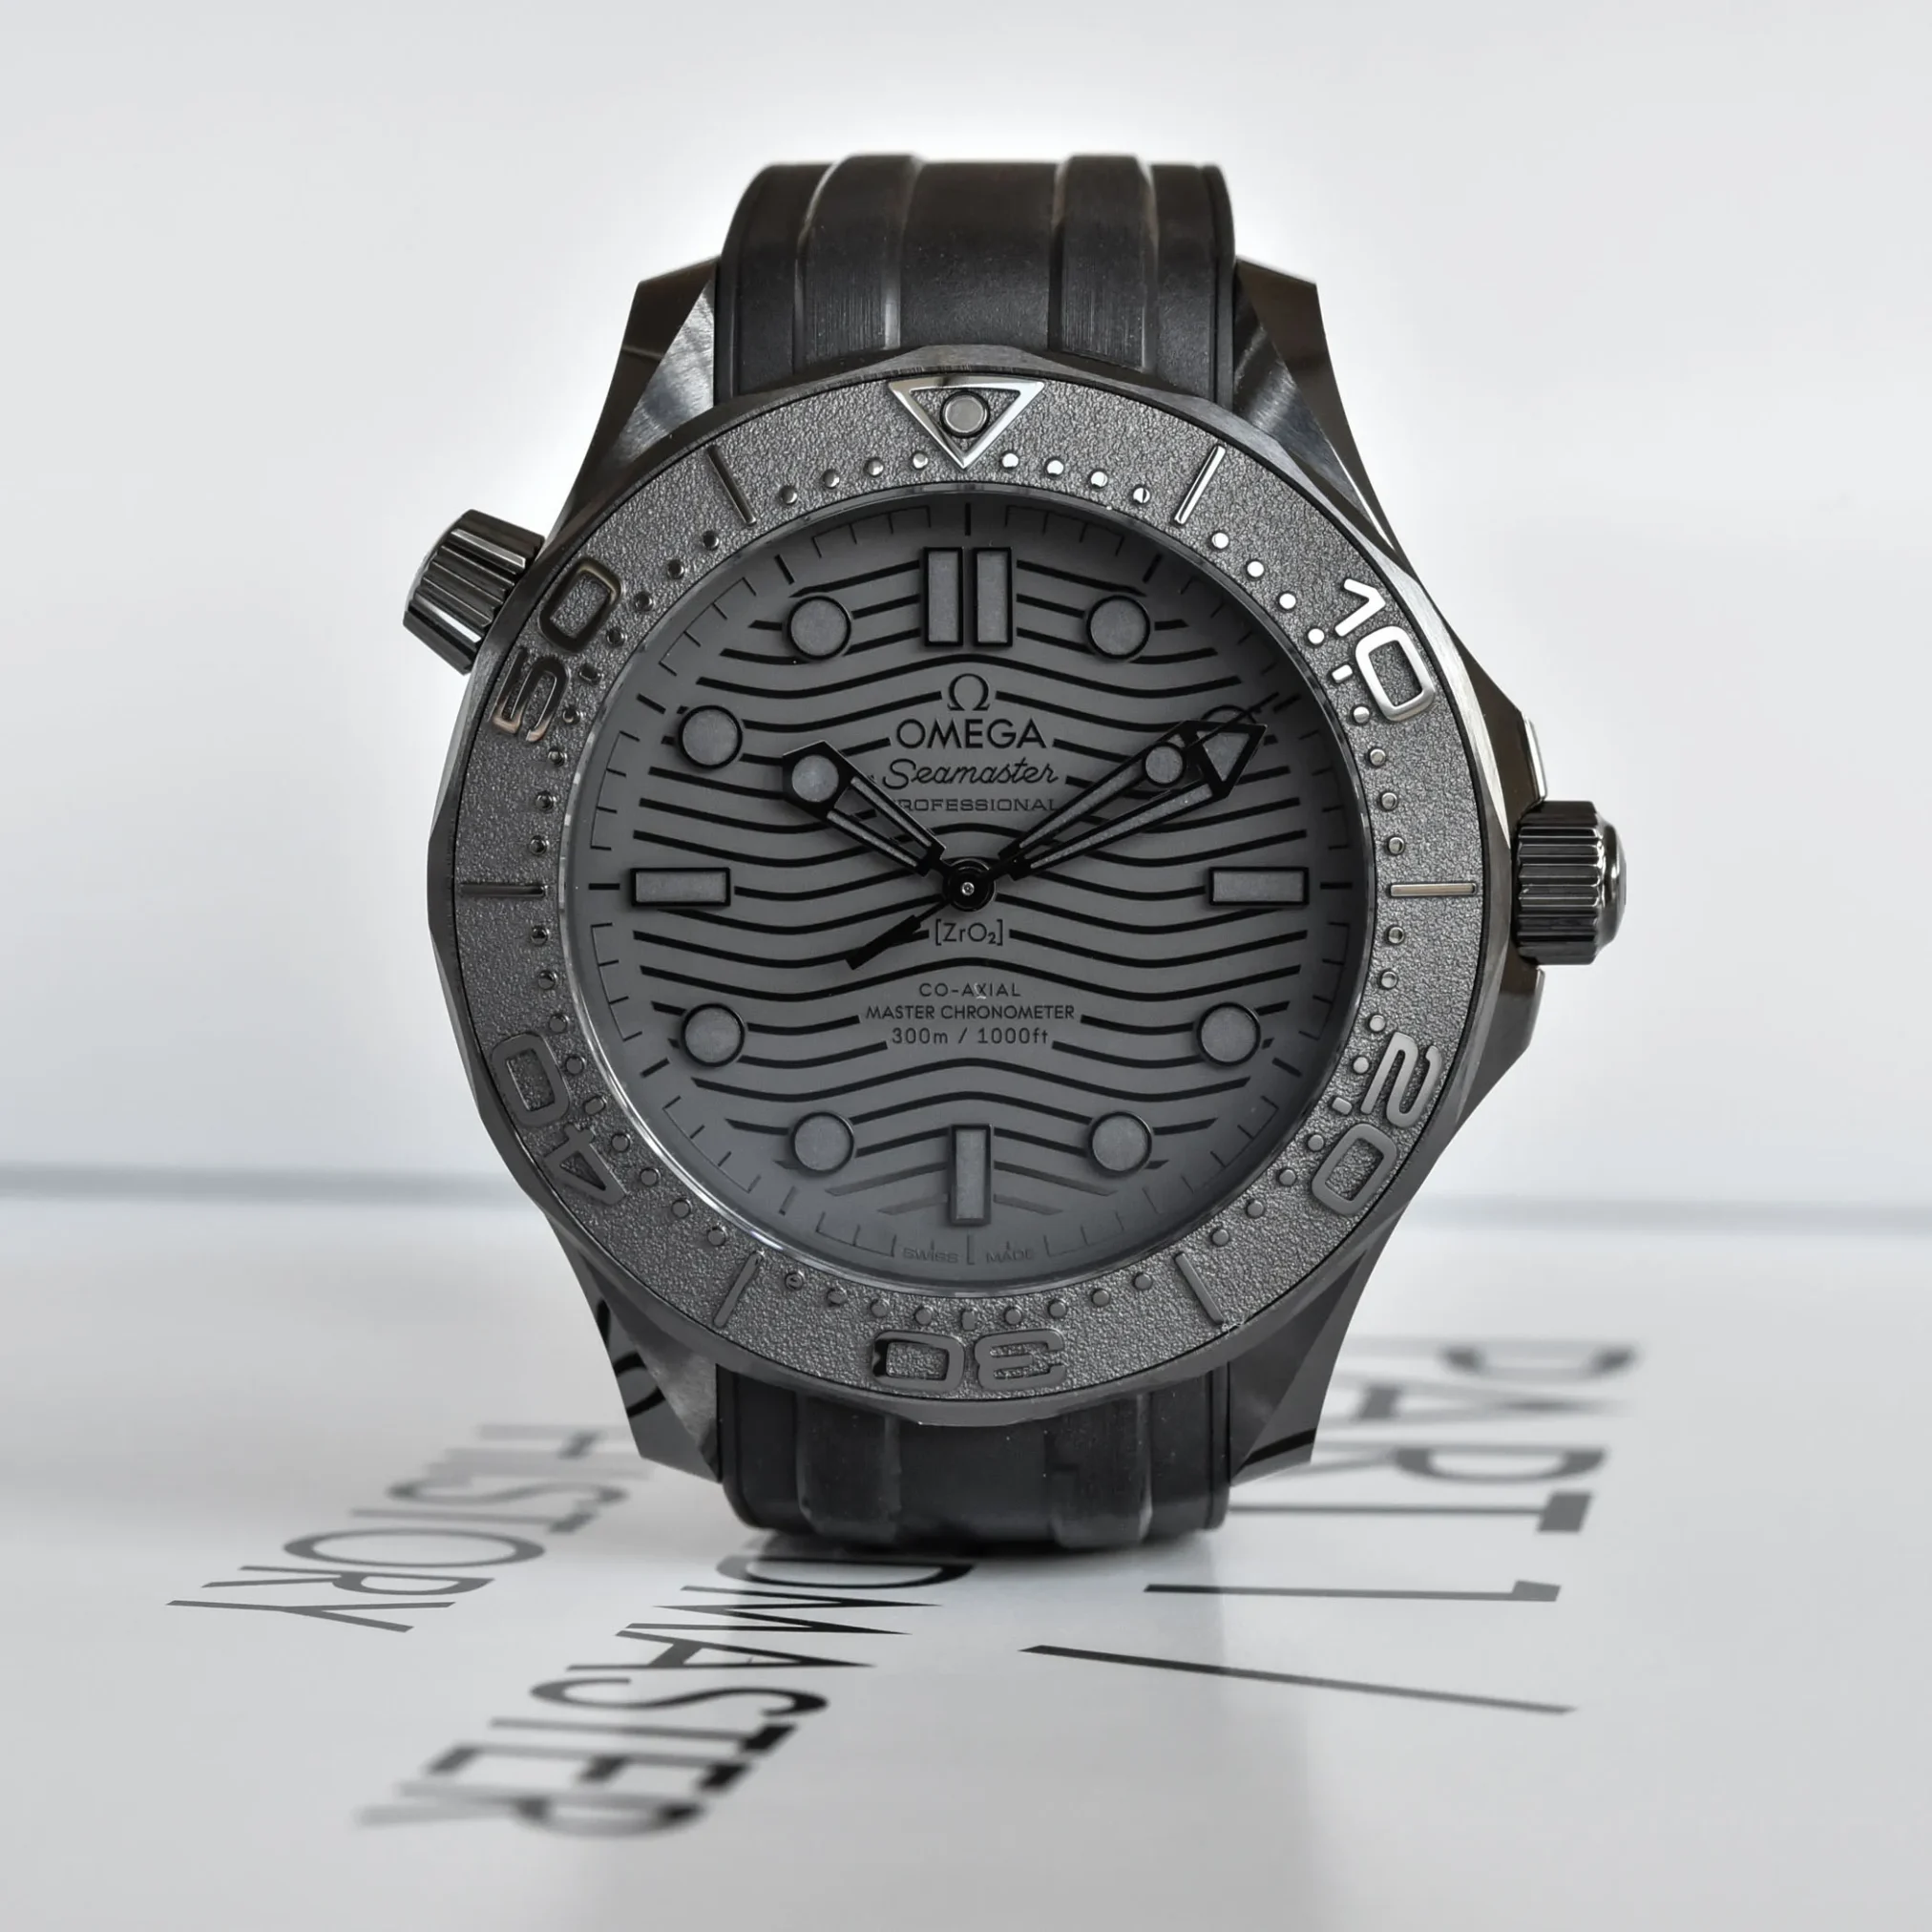 Đồng hồ Omega Seamaster Diver 300M Black Ceramic 210.92.44.20.01.003 mặt số màu đen. Dây đeo bằng cao su. Thân vỏ bằng black ceramic.